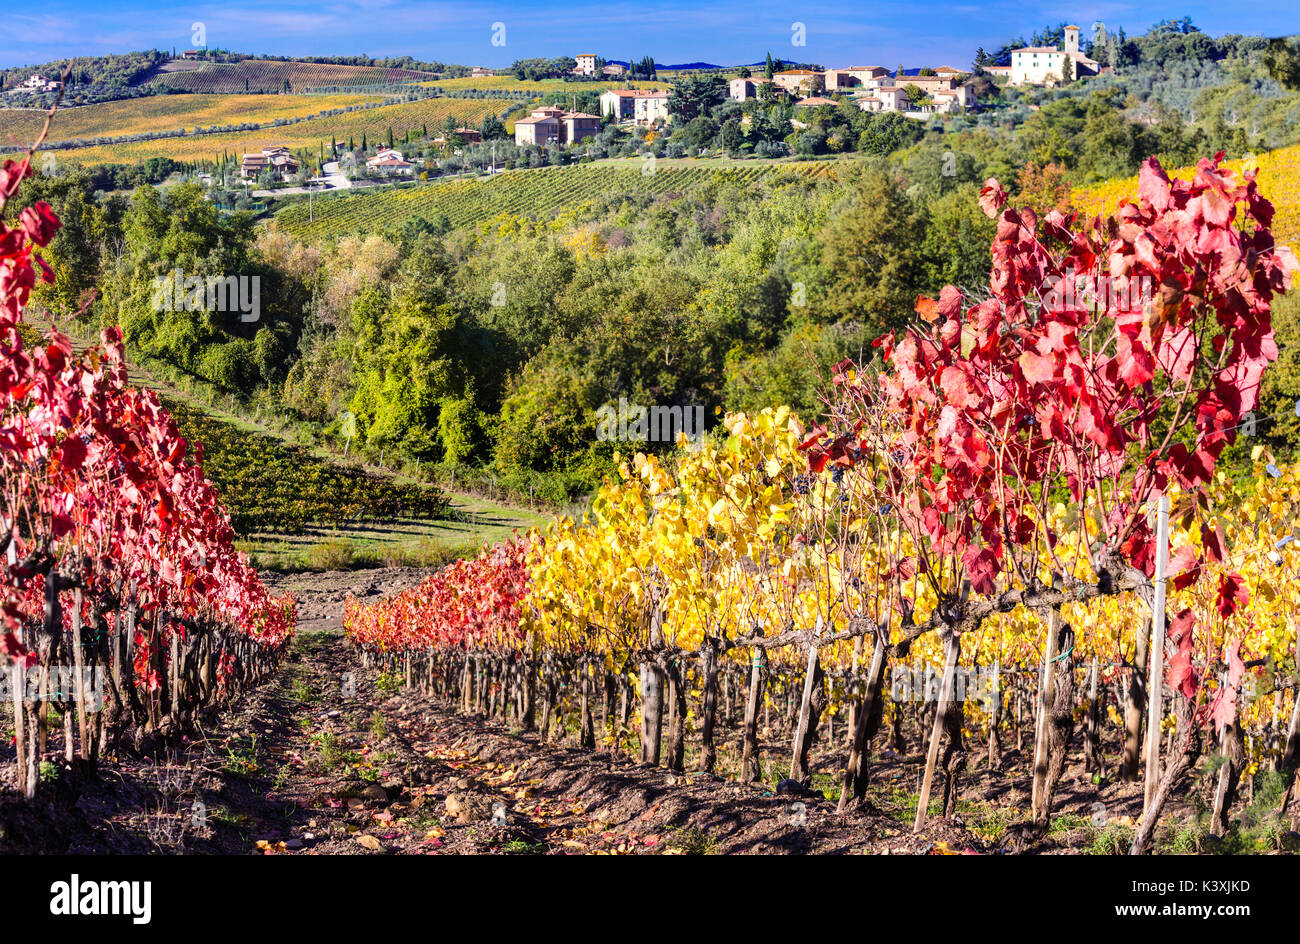 Décor de l'automne - golden vignobles de Toscane vigne - région de l'Italie Banque D'Images